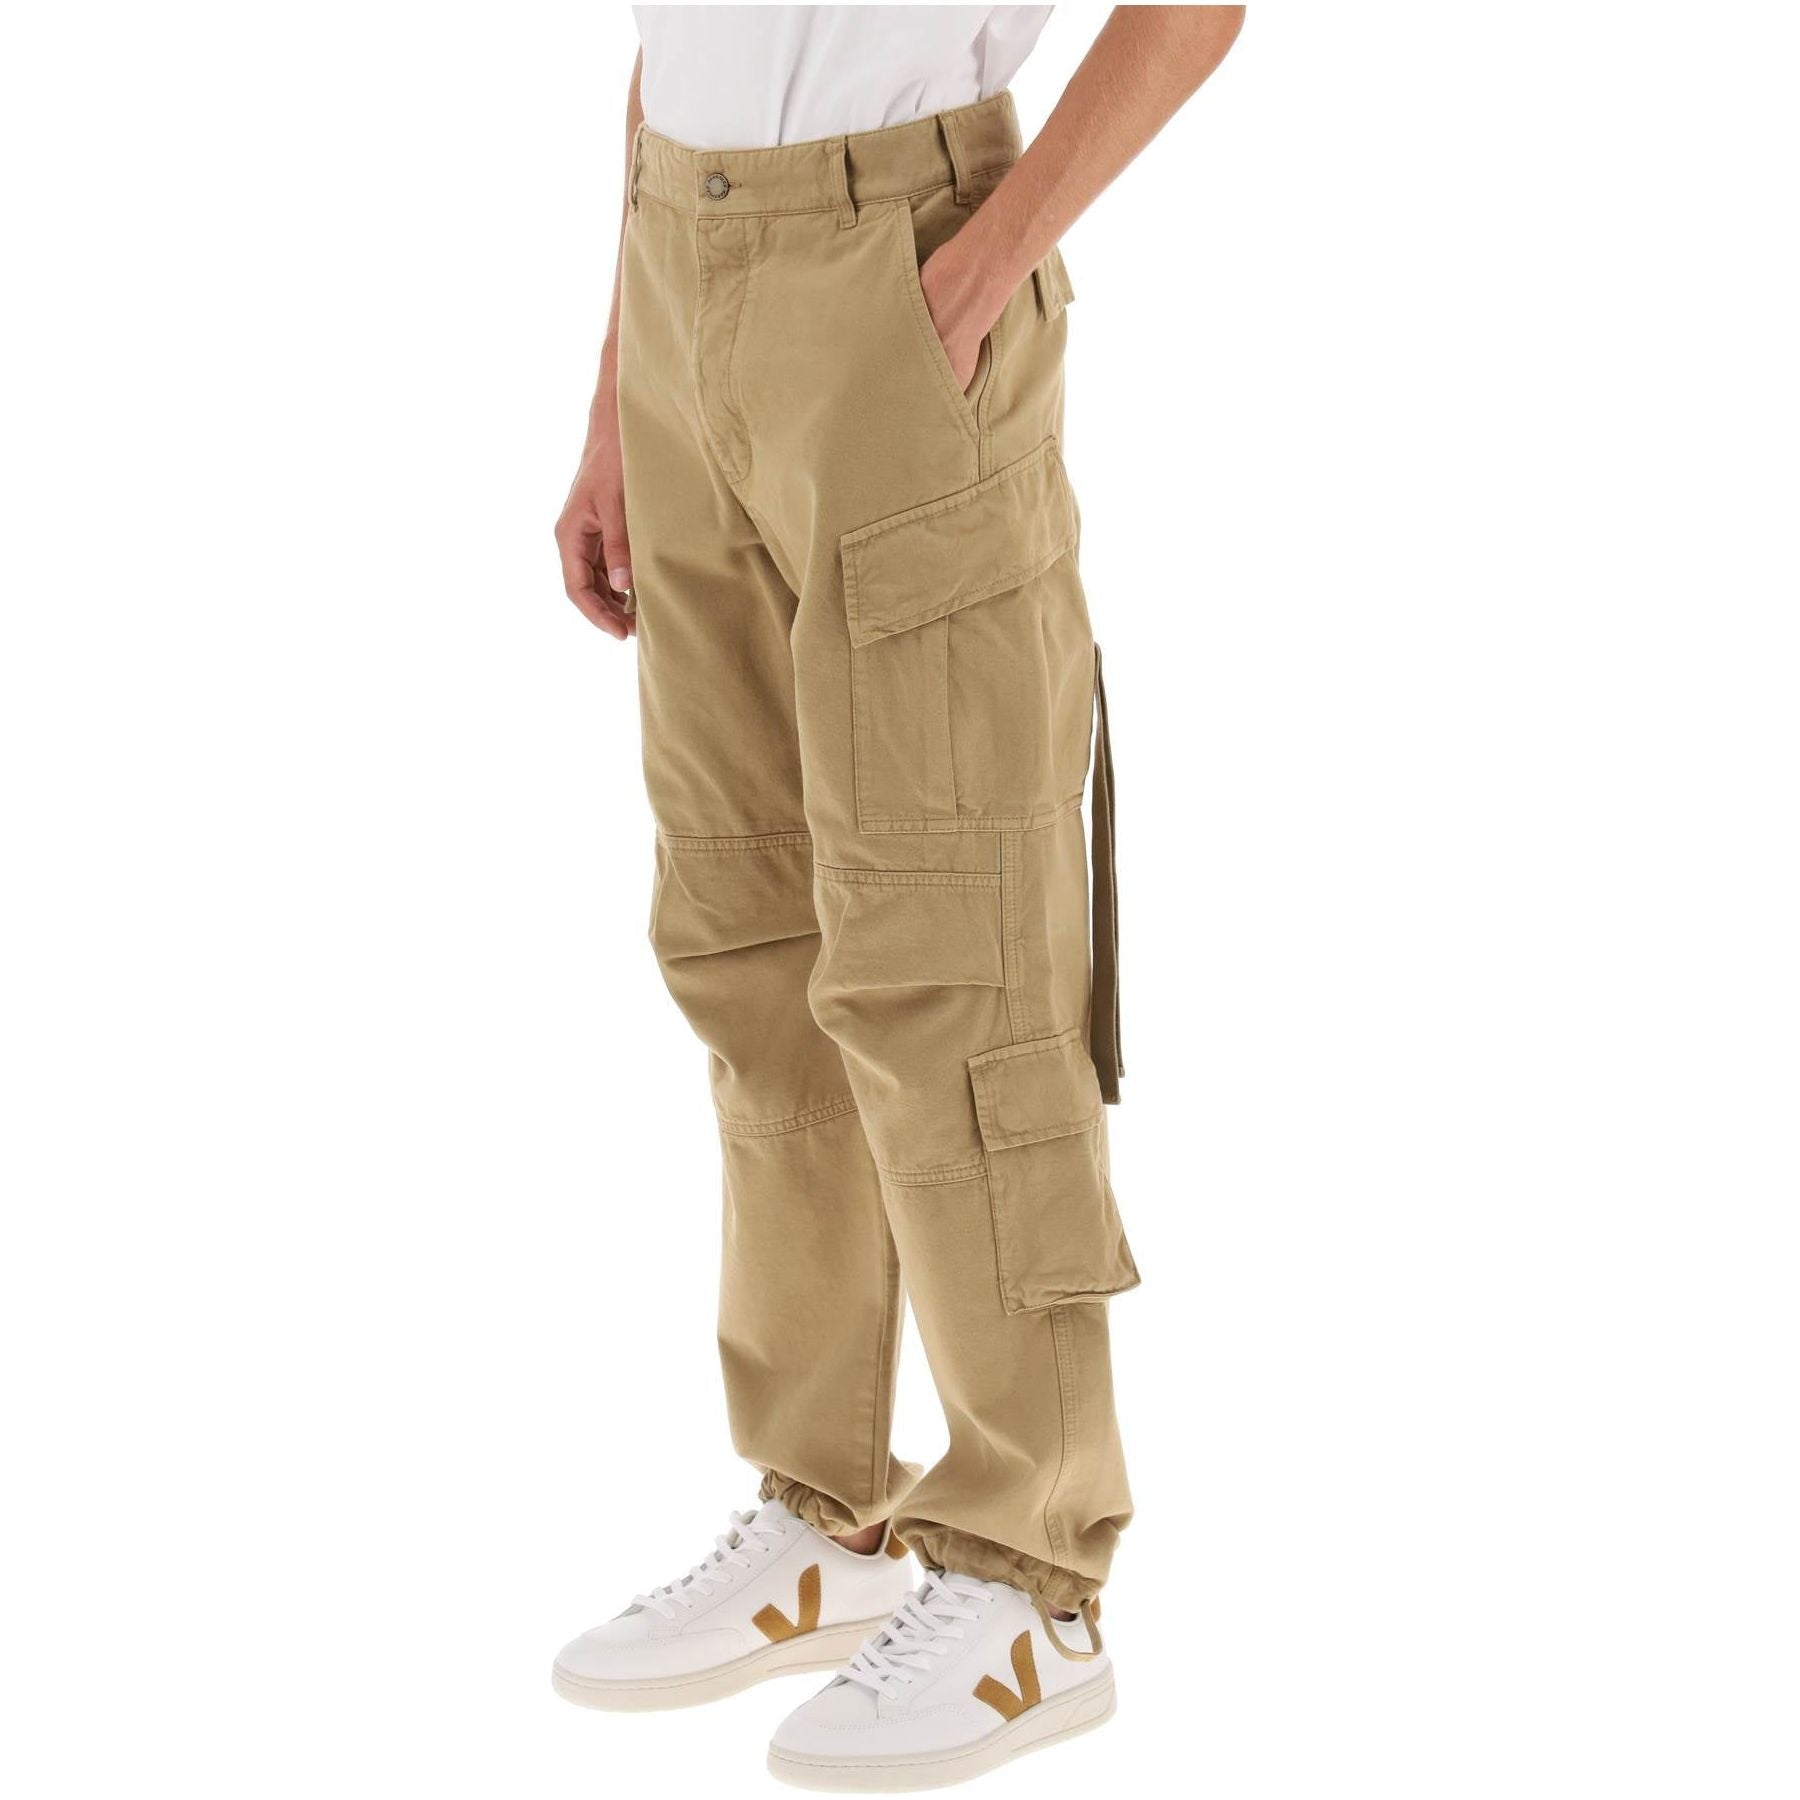 Cotton Saint Cargo Pants